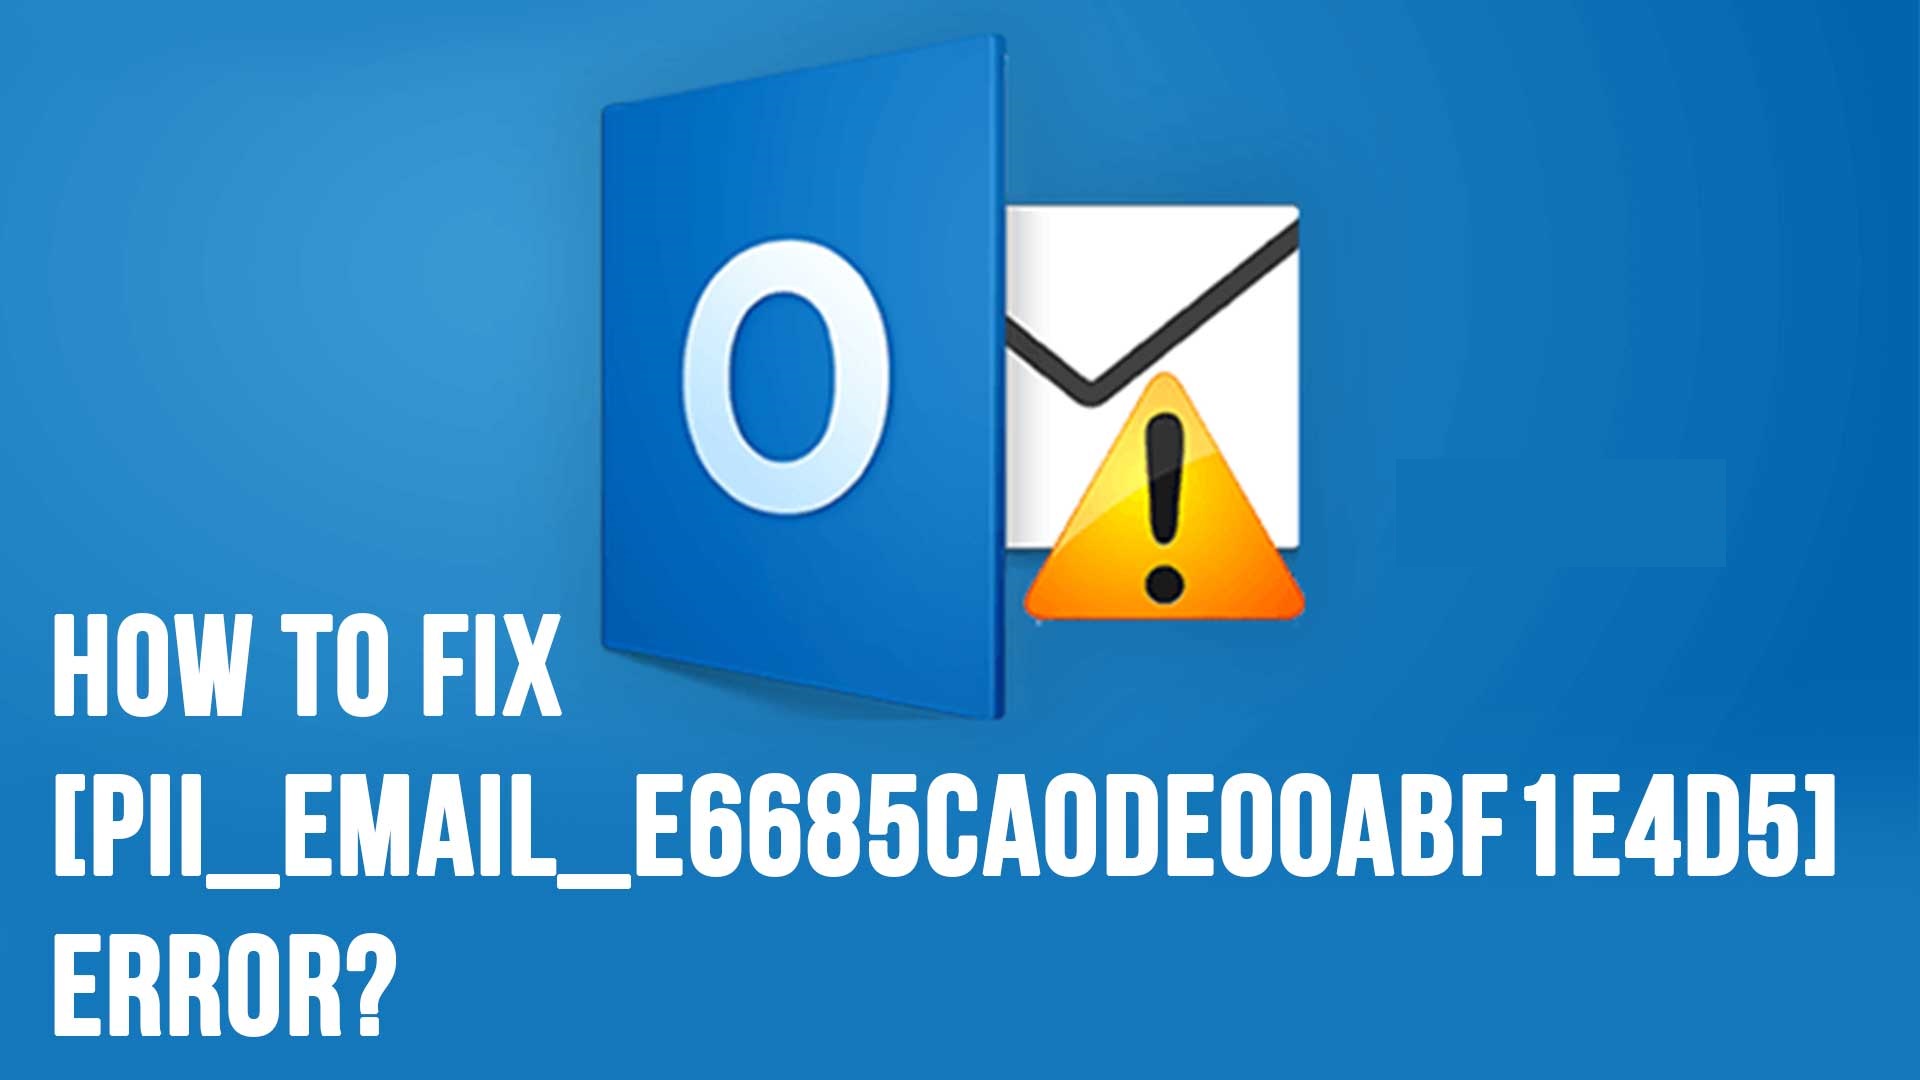 How to Fix [pii_email_e6685ca0de00abf1e4d5] Error?